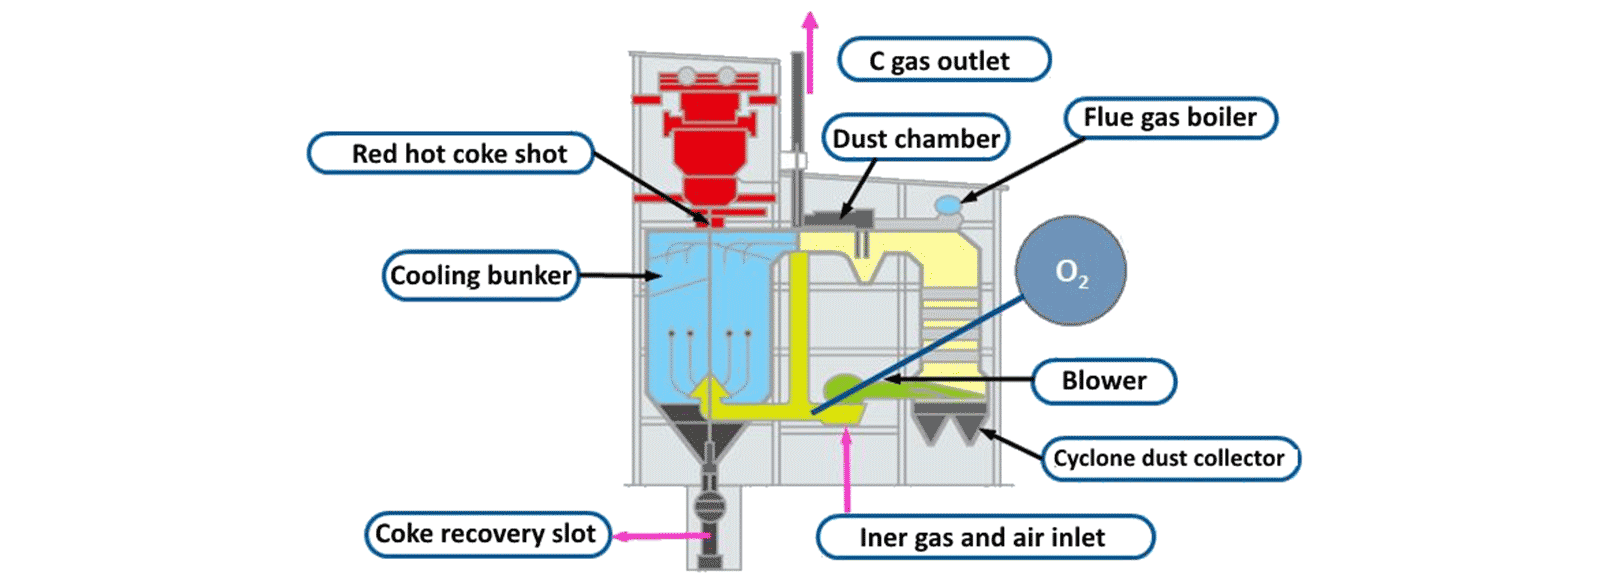 Sistema de refrigeración de coque seco cdq